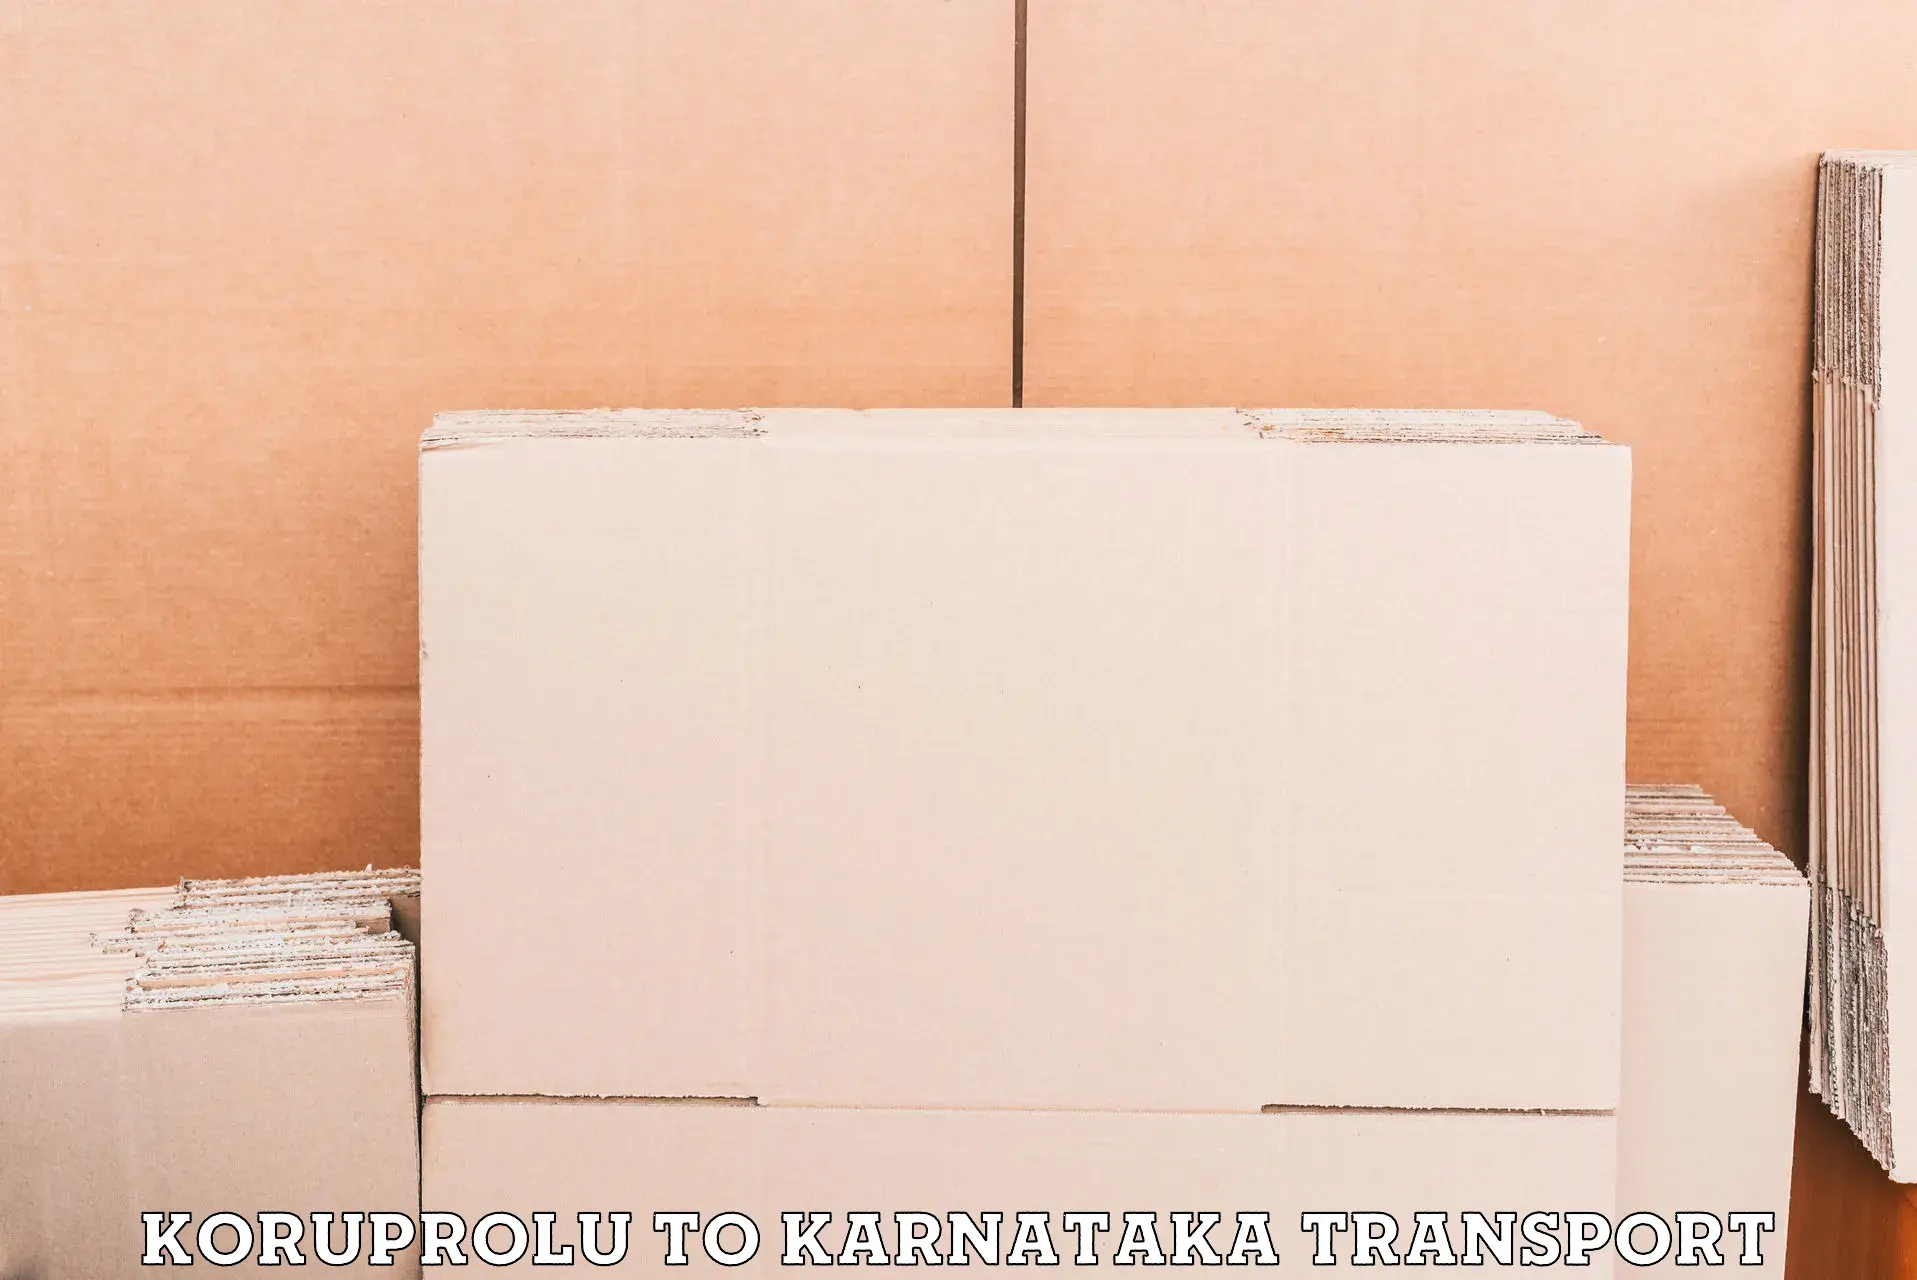 Two wheeler transport services Koruprolu to Yelburga